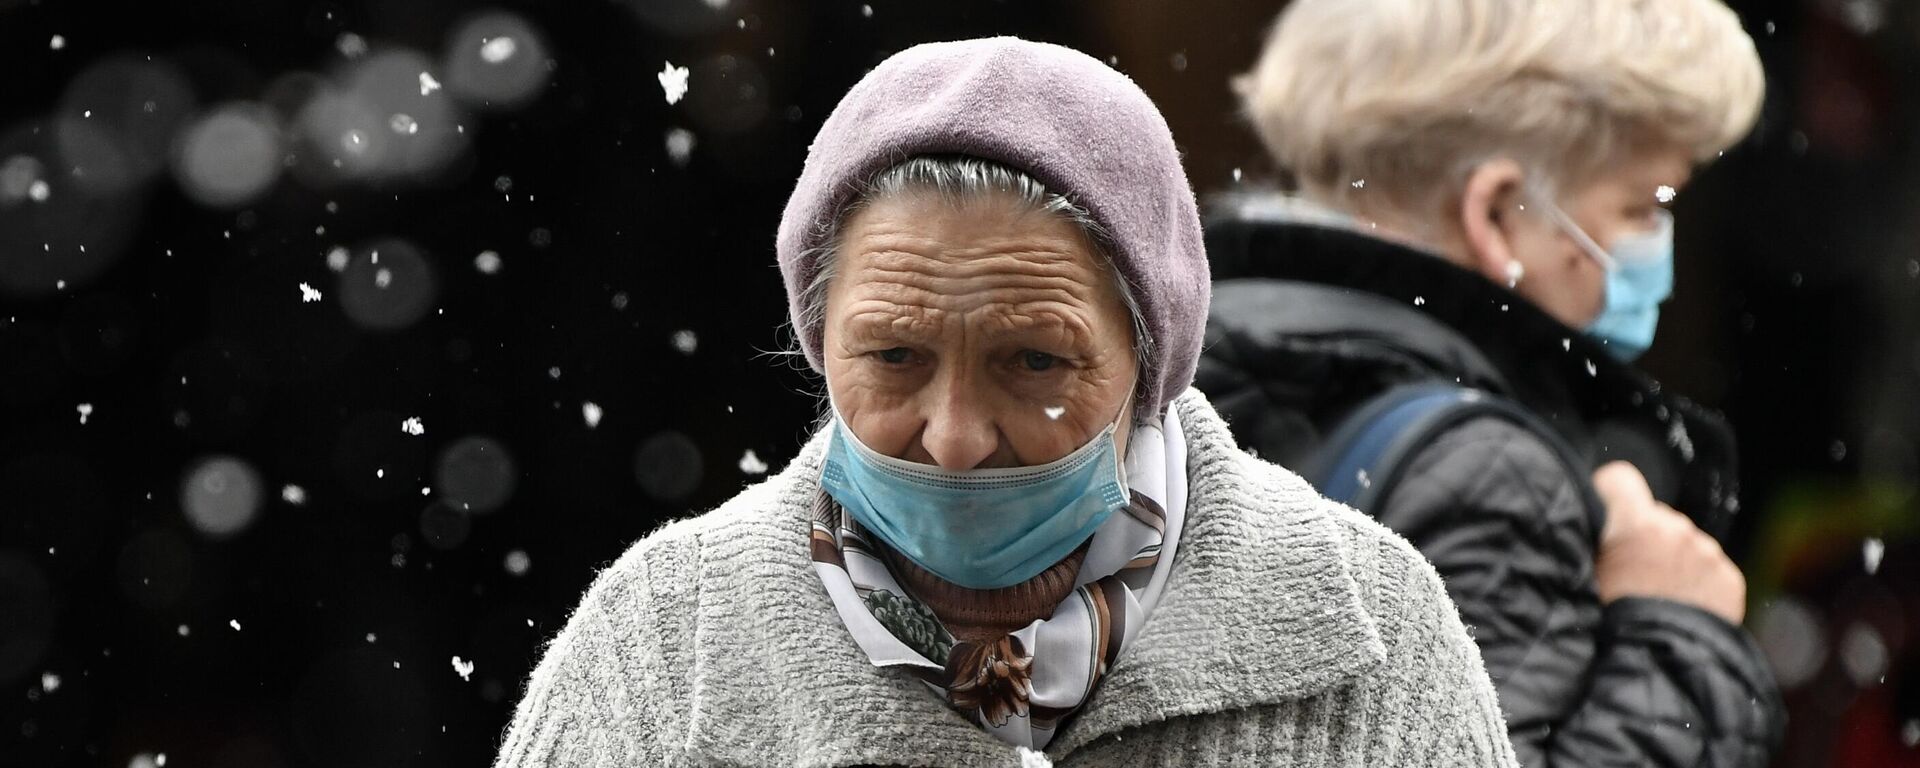 Пожилая женщина, архивное фото - Sputnik Тоҷикистон, 1920, 14.12.2021